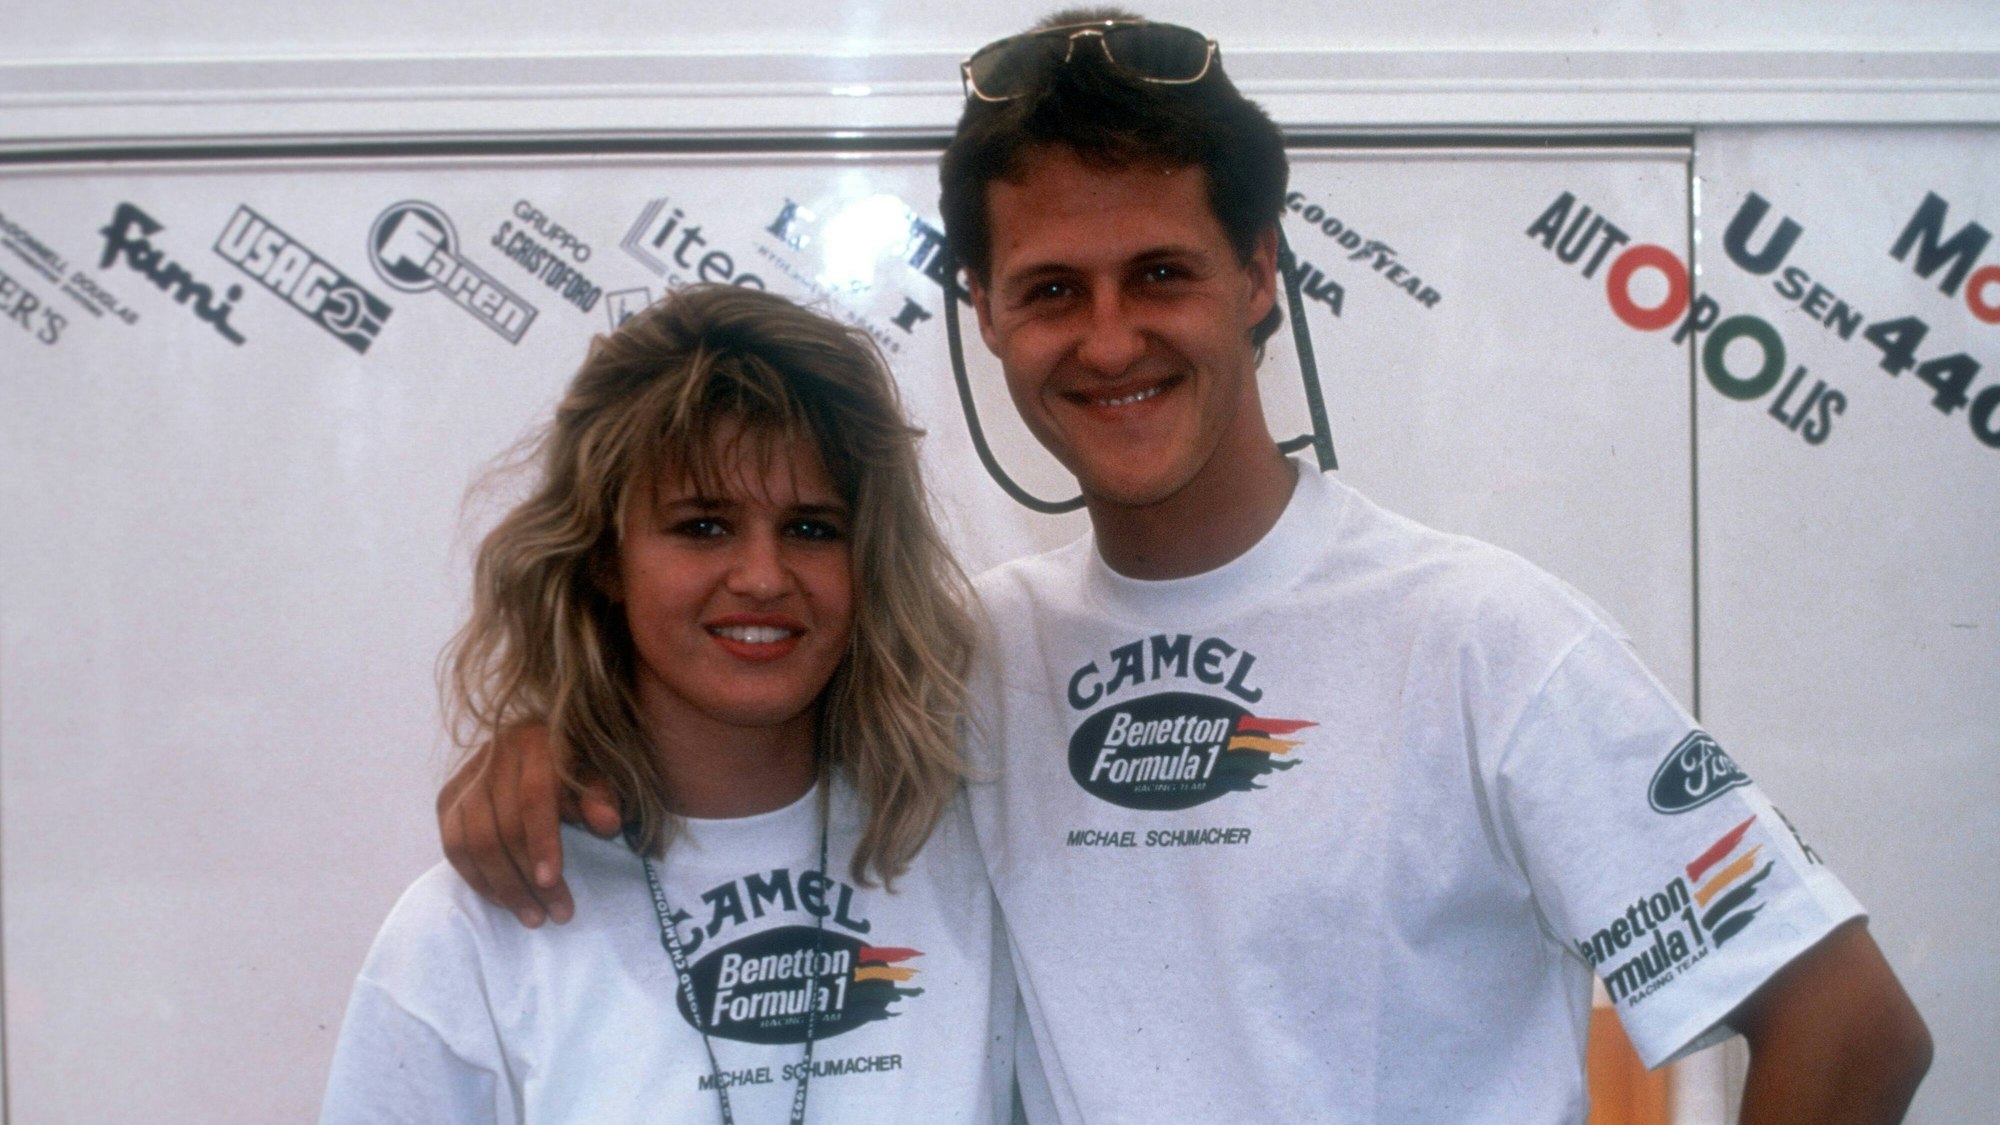 Michael Schumacher (Benetton) mit seiner Freundin Corinna Betsch.